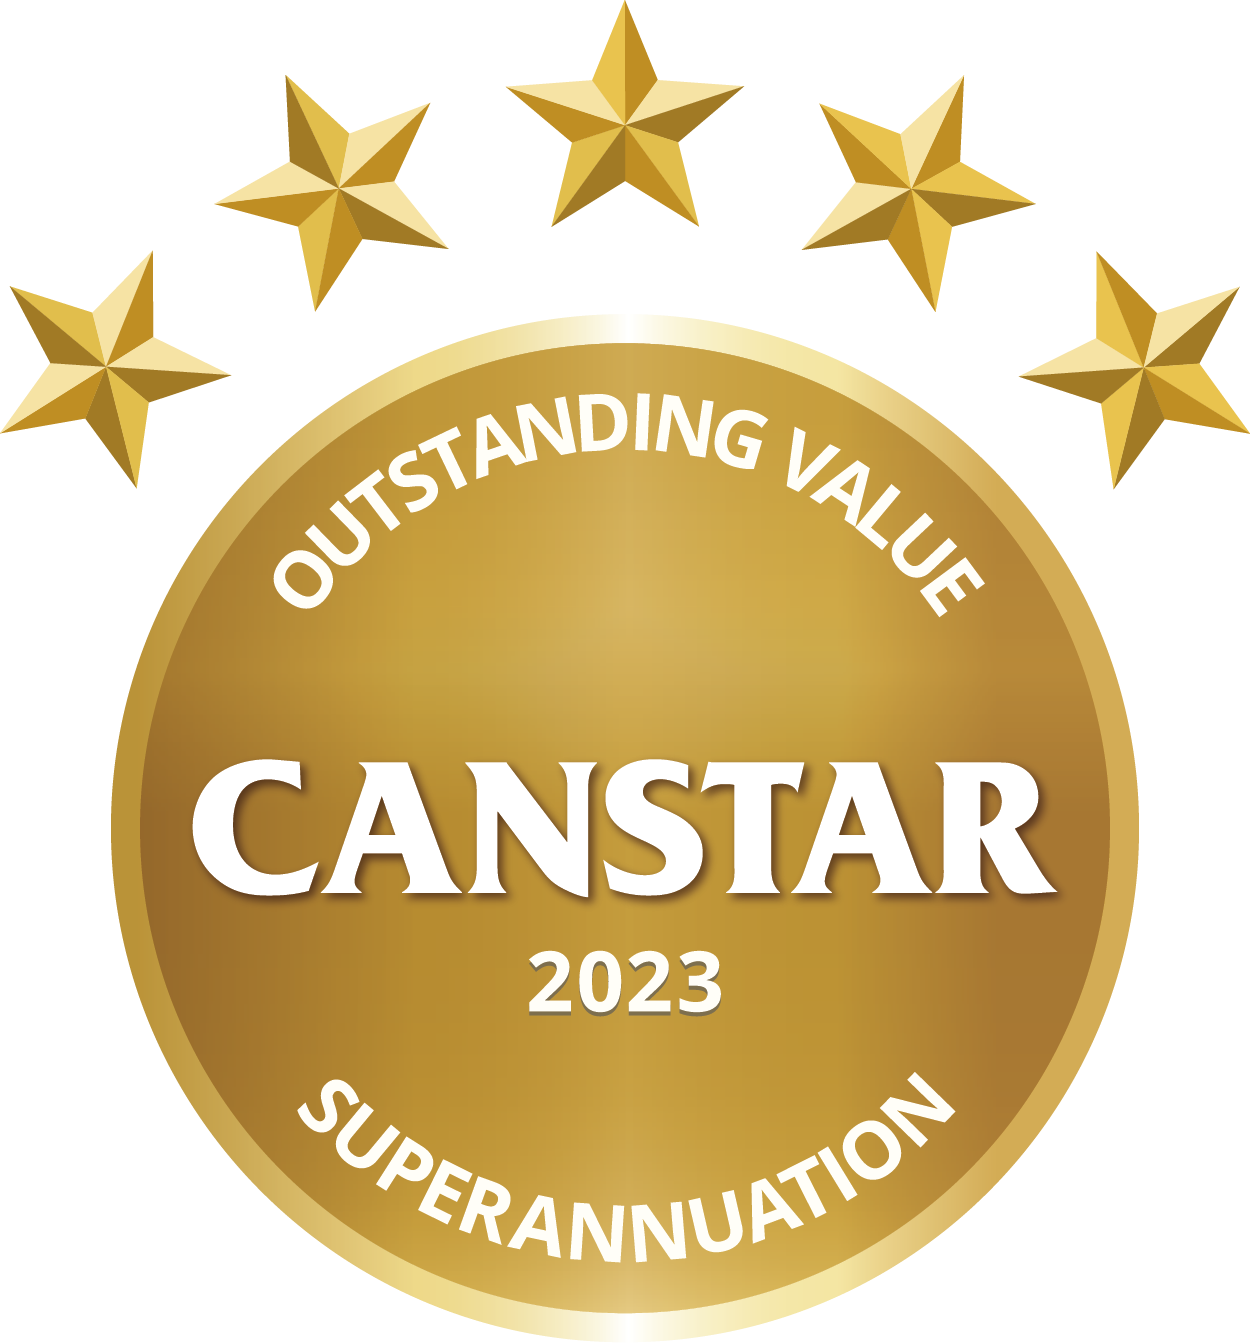 Canstar outstanding value 2023 superannuation award logo